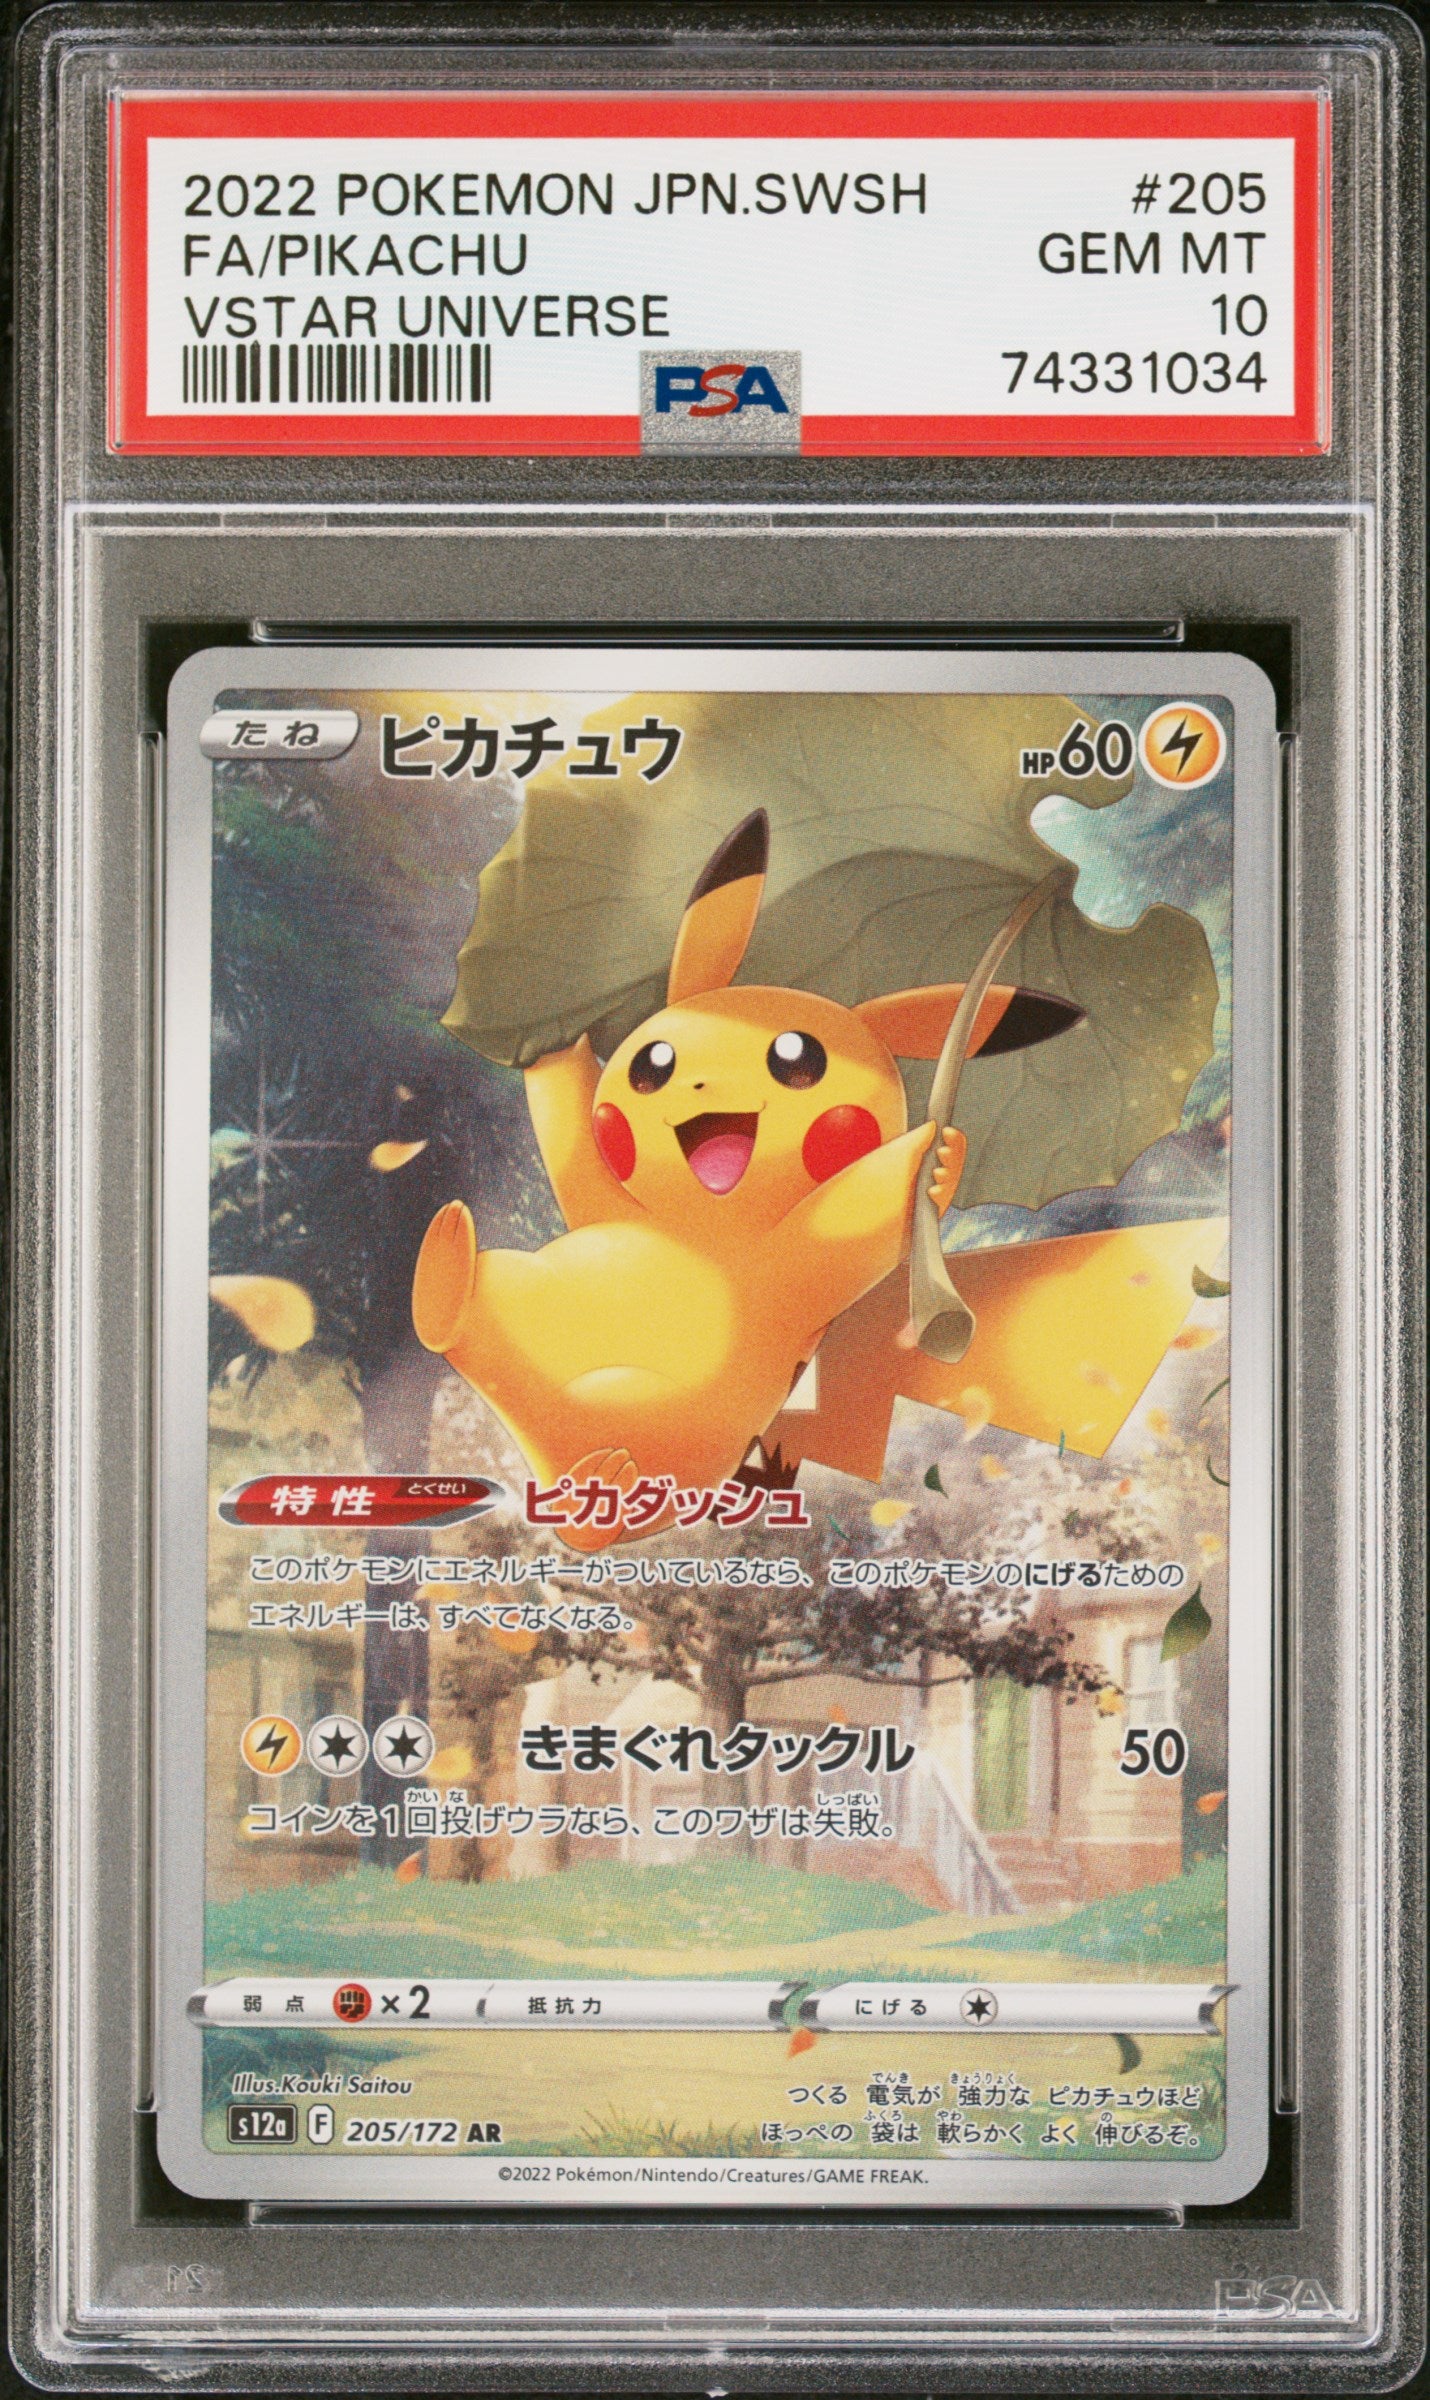 PSA 10] Pokemon Card “Pikachu” s12a 205/172 (AR) Japanese Version